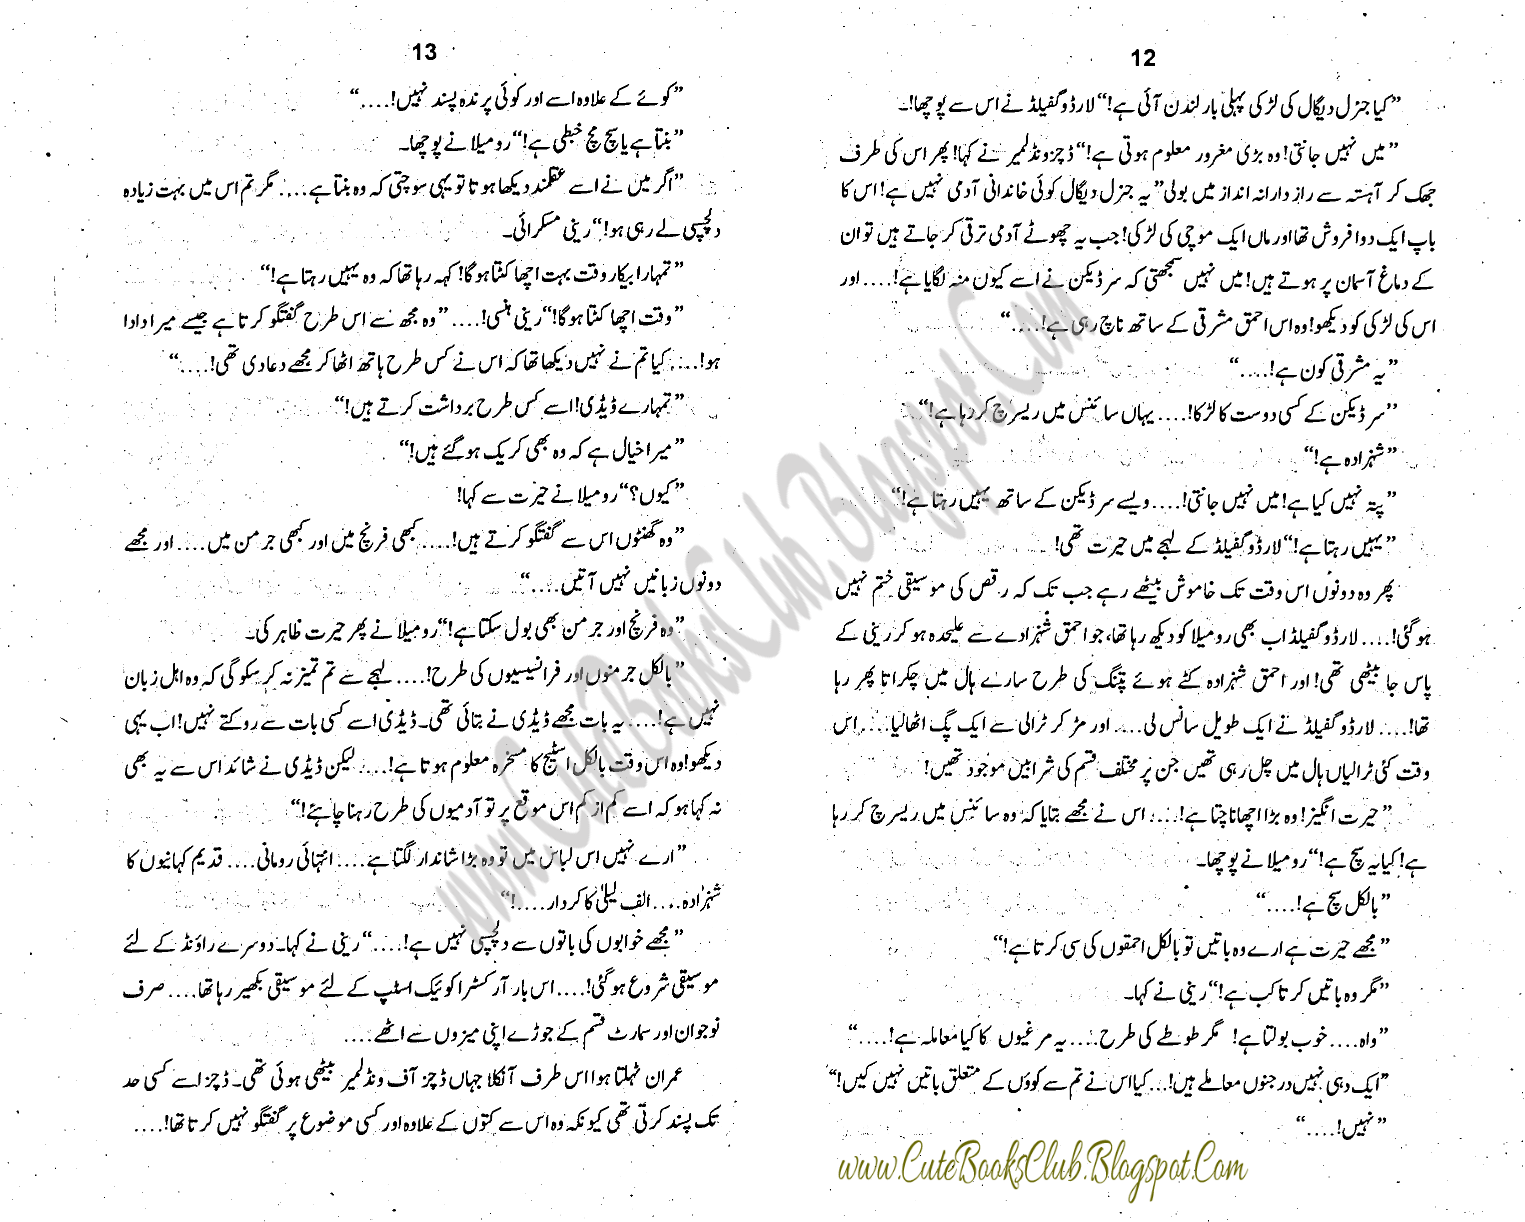 012-Lashon Ka Bazar, Imran Series by Ibne Safi (Urdu Novel)